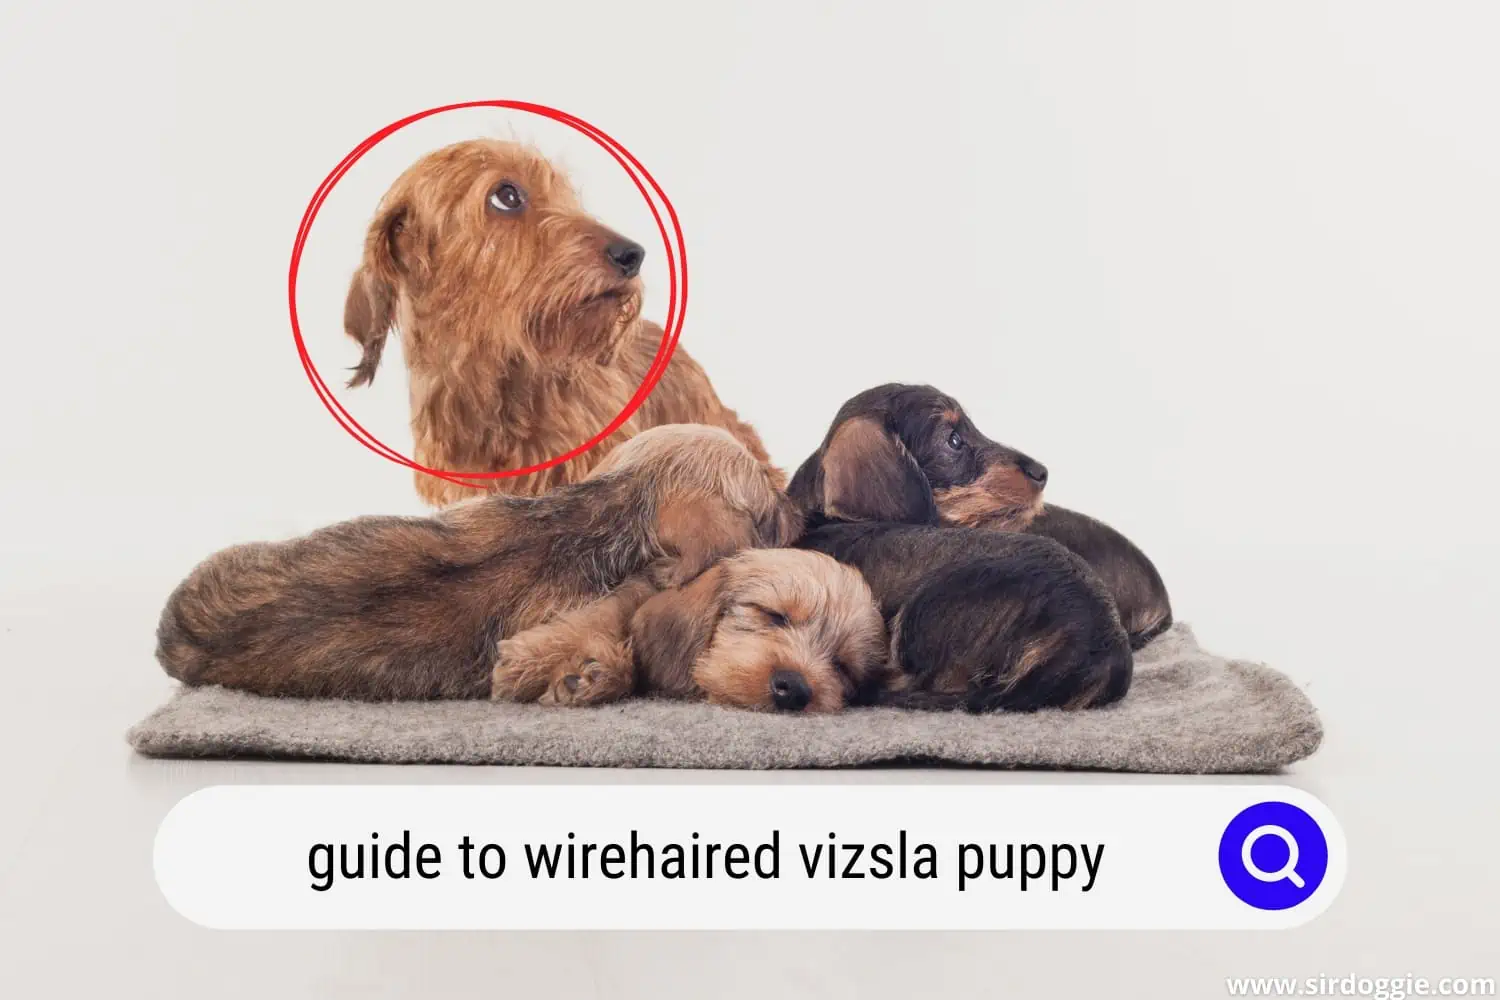 Wirehaired Vizsla puppy